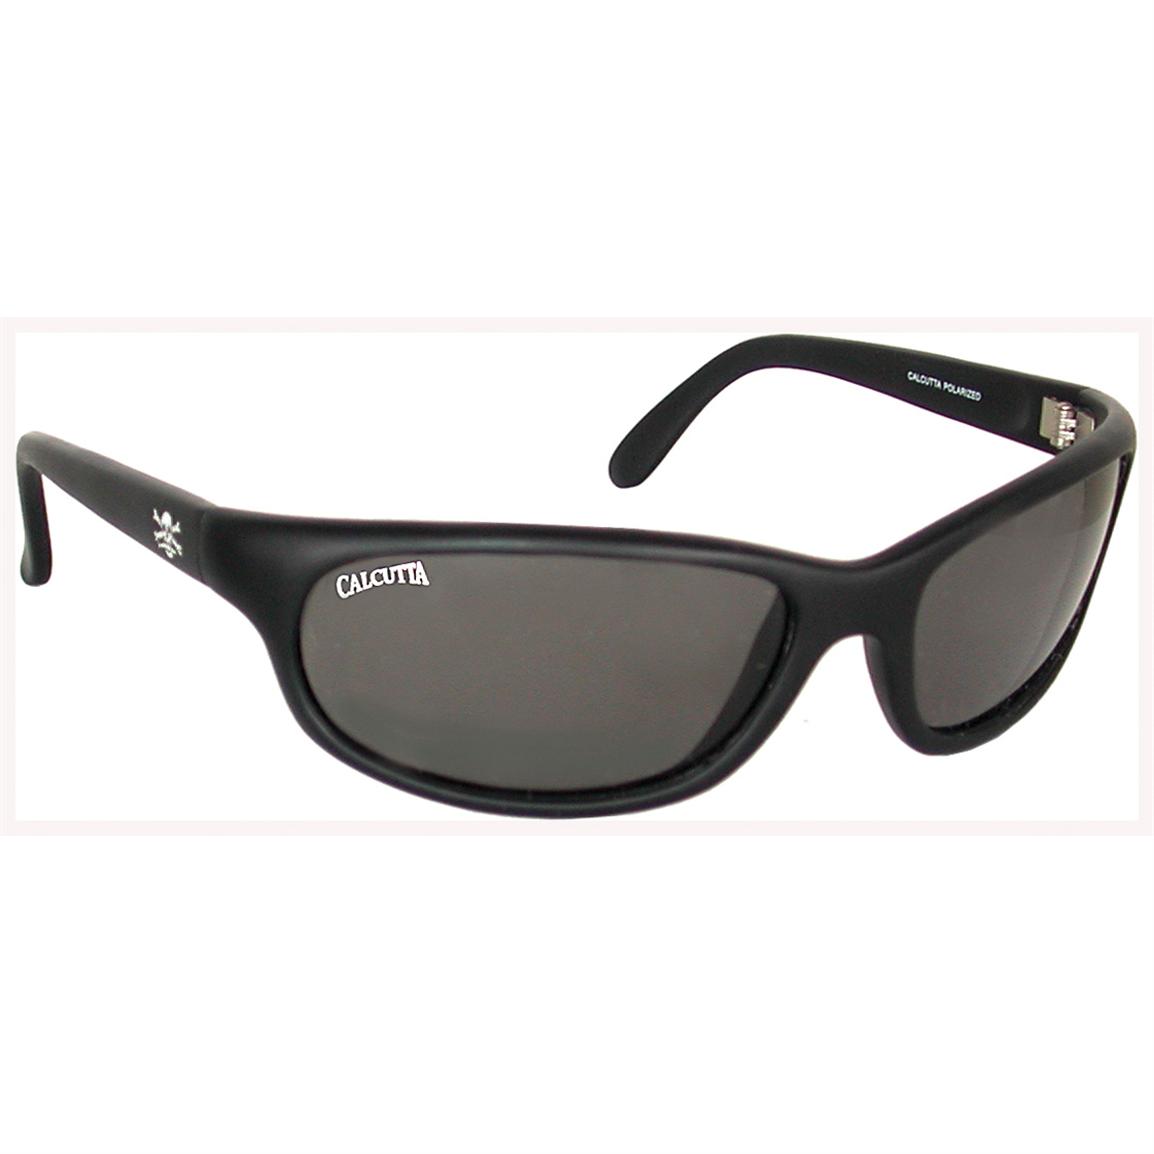 Calcutta Pompano Sunglasses - 259095, Sunglasses at Sportsman's Guide